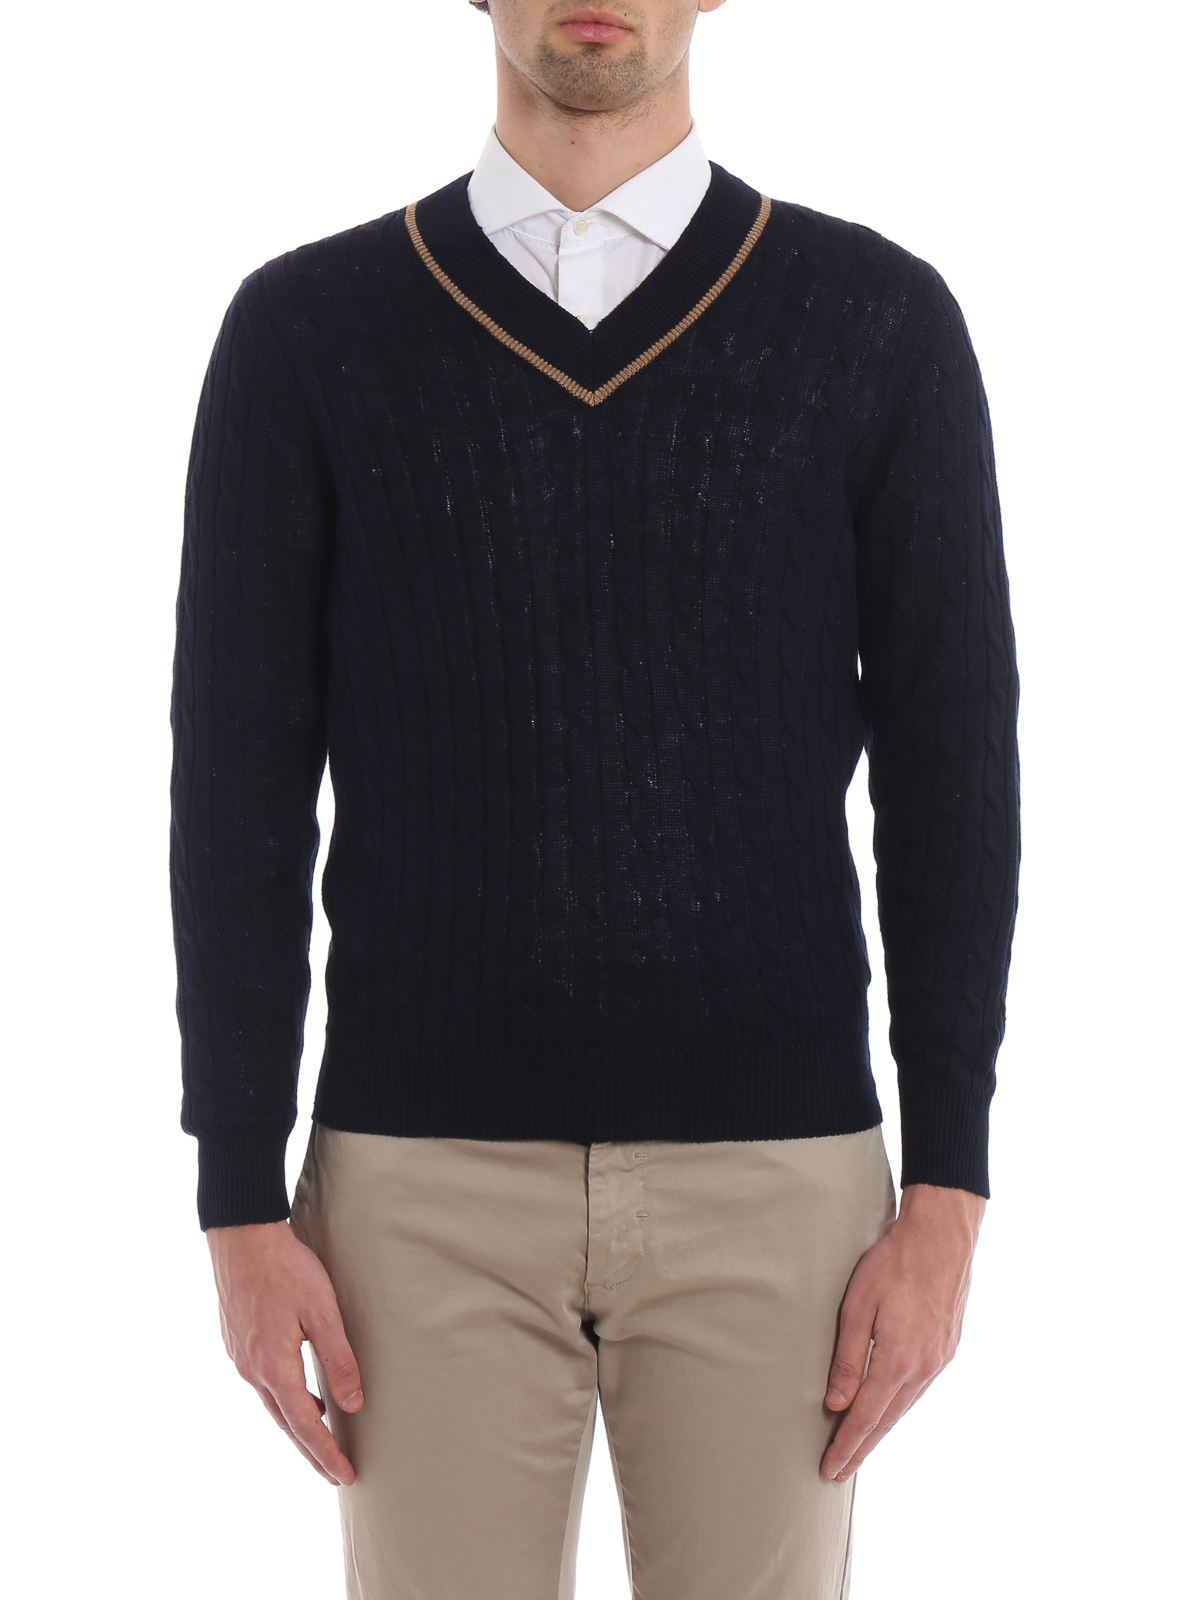 NWT $725 Brunello Cucinelli Men's Linen-Cotton Cable-Knit Crewneck Sweater  A186 